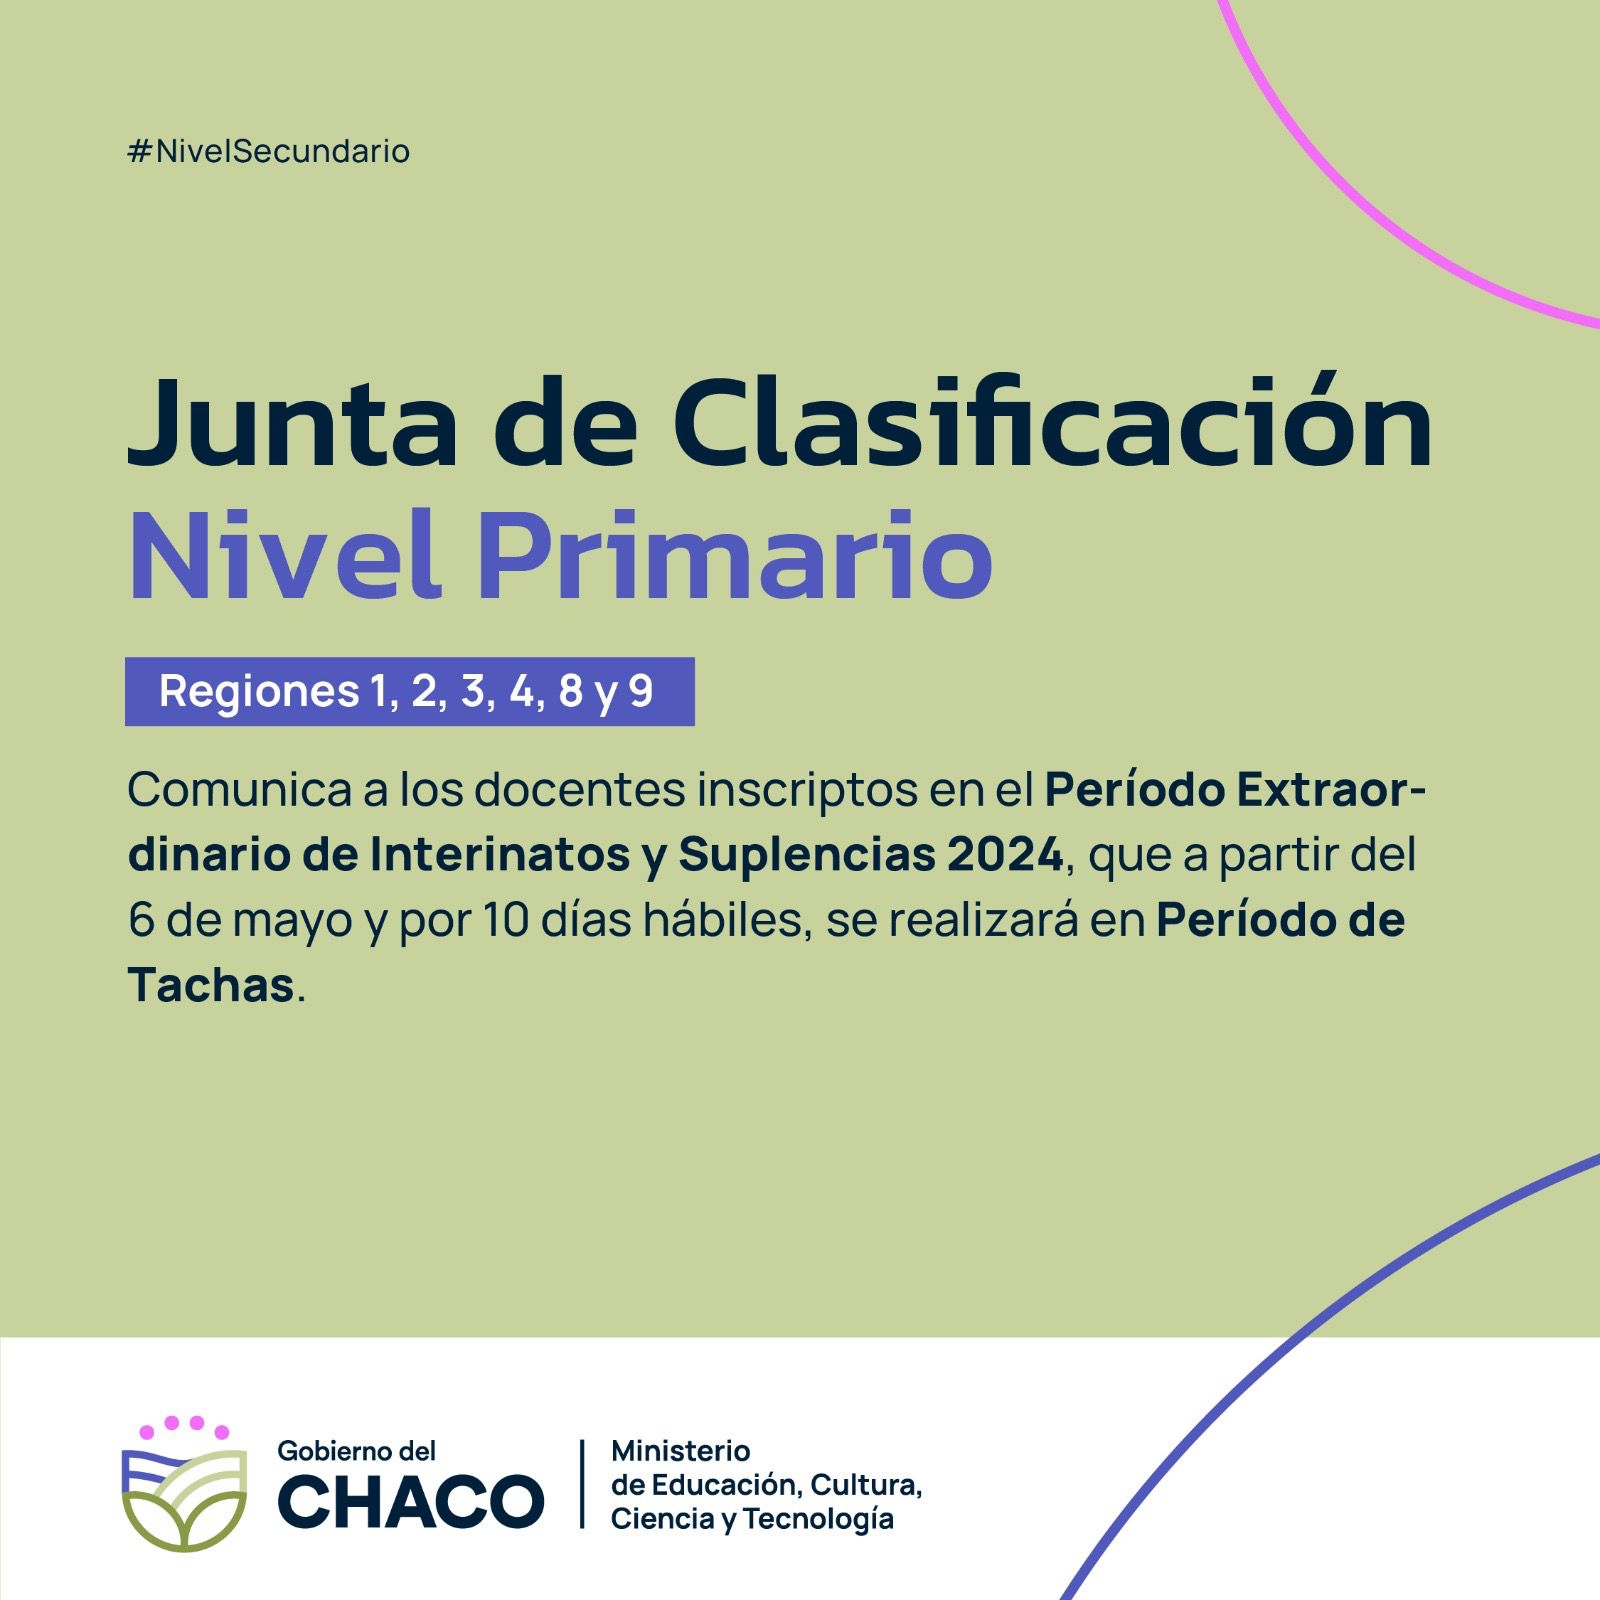 JUNTA DE CLASIFICACIÓN NIVEL PRIMARIO: PERÍODO DE TACHAS DE INTERINATOS Y SUPLENCIAS